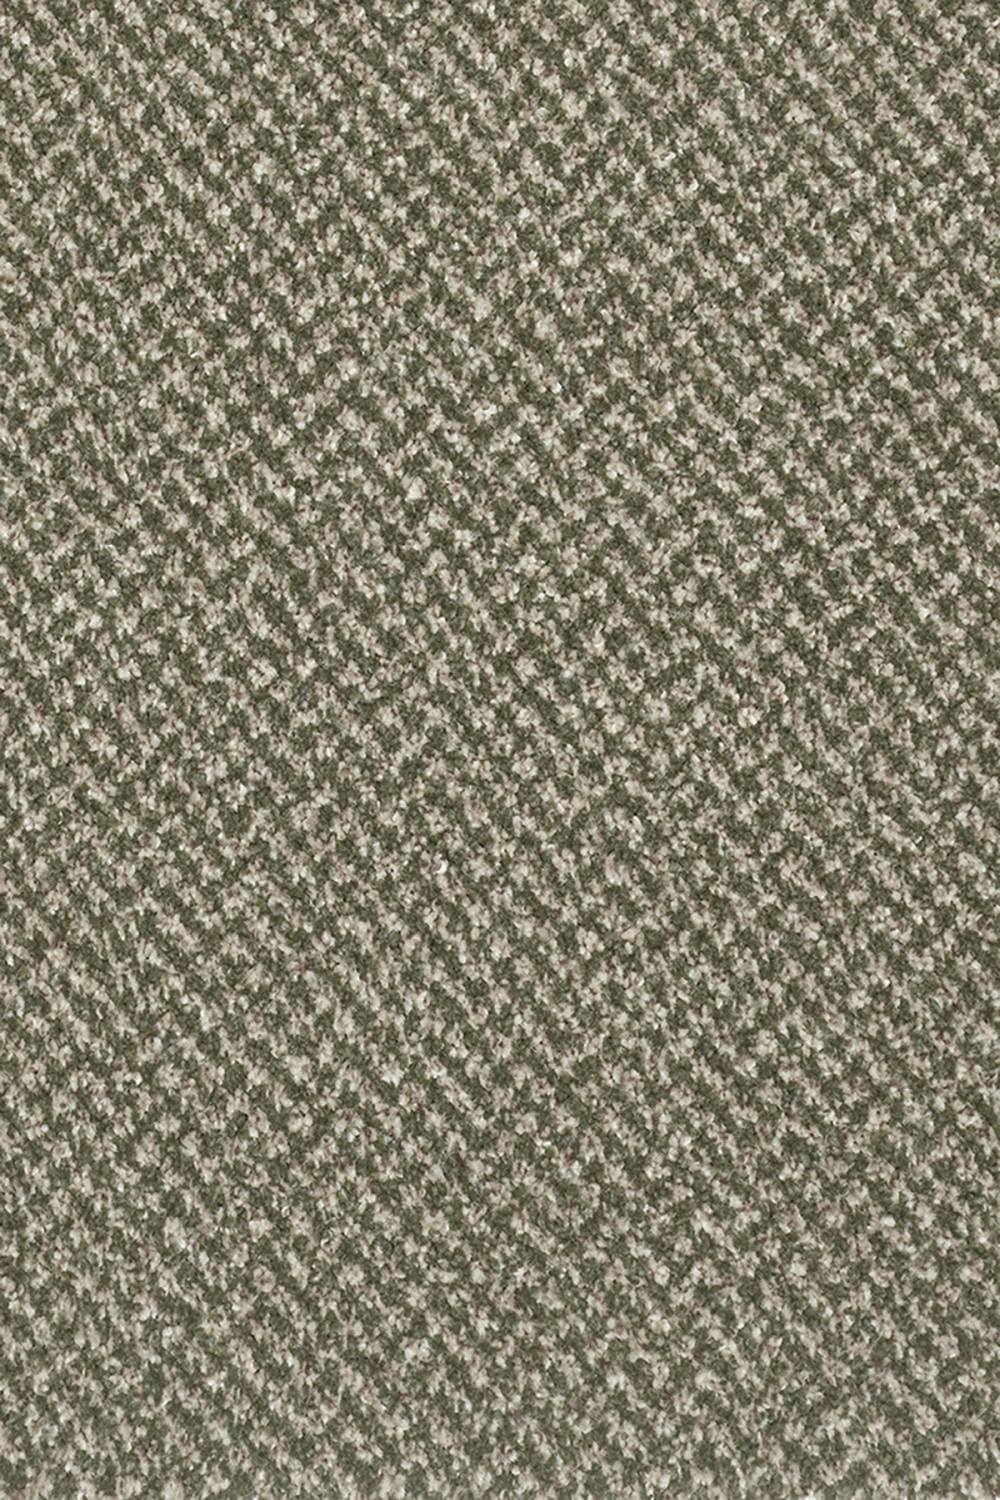 Orkney Tweed Carpet - Pixie 24